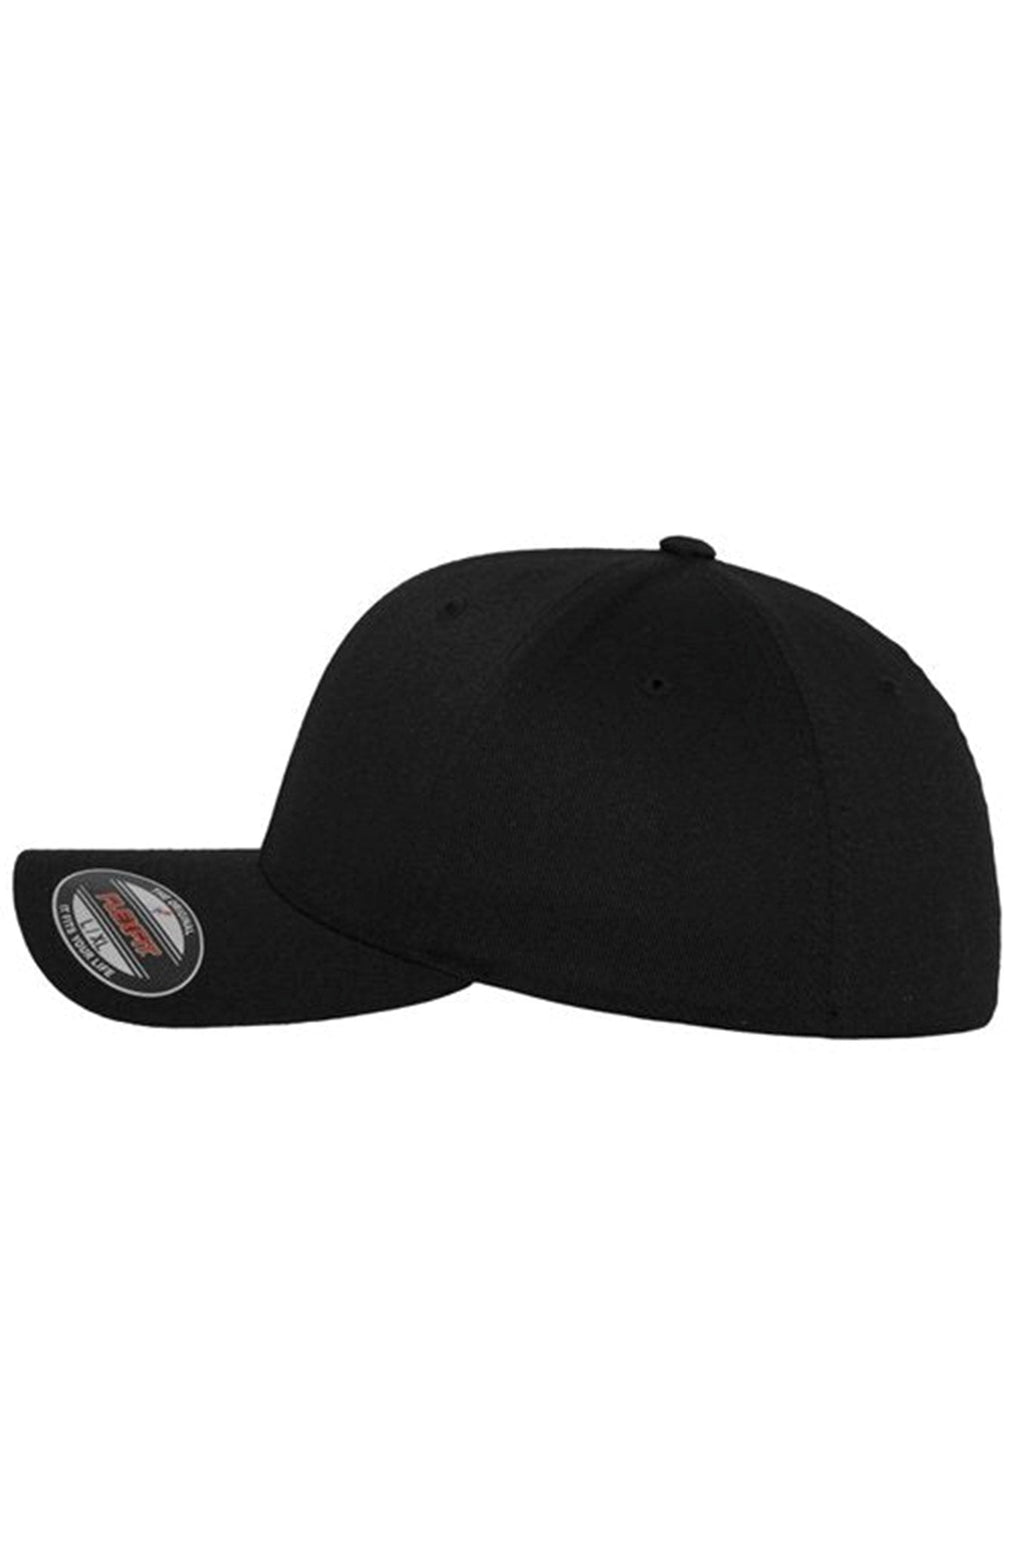 Originálna baseballová čiapka FlexFit - čierna